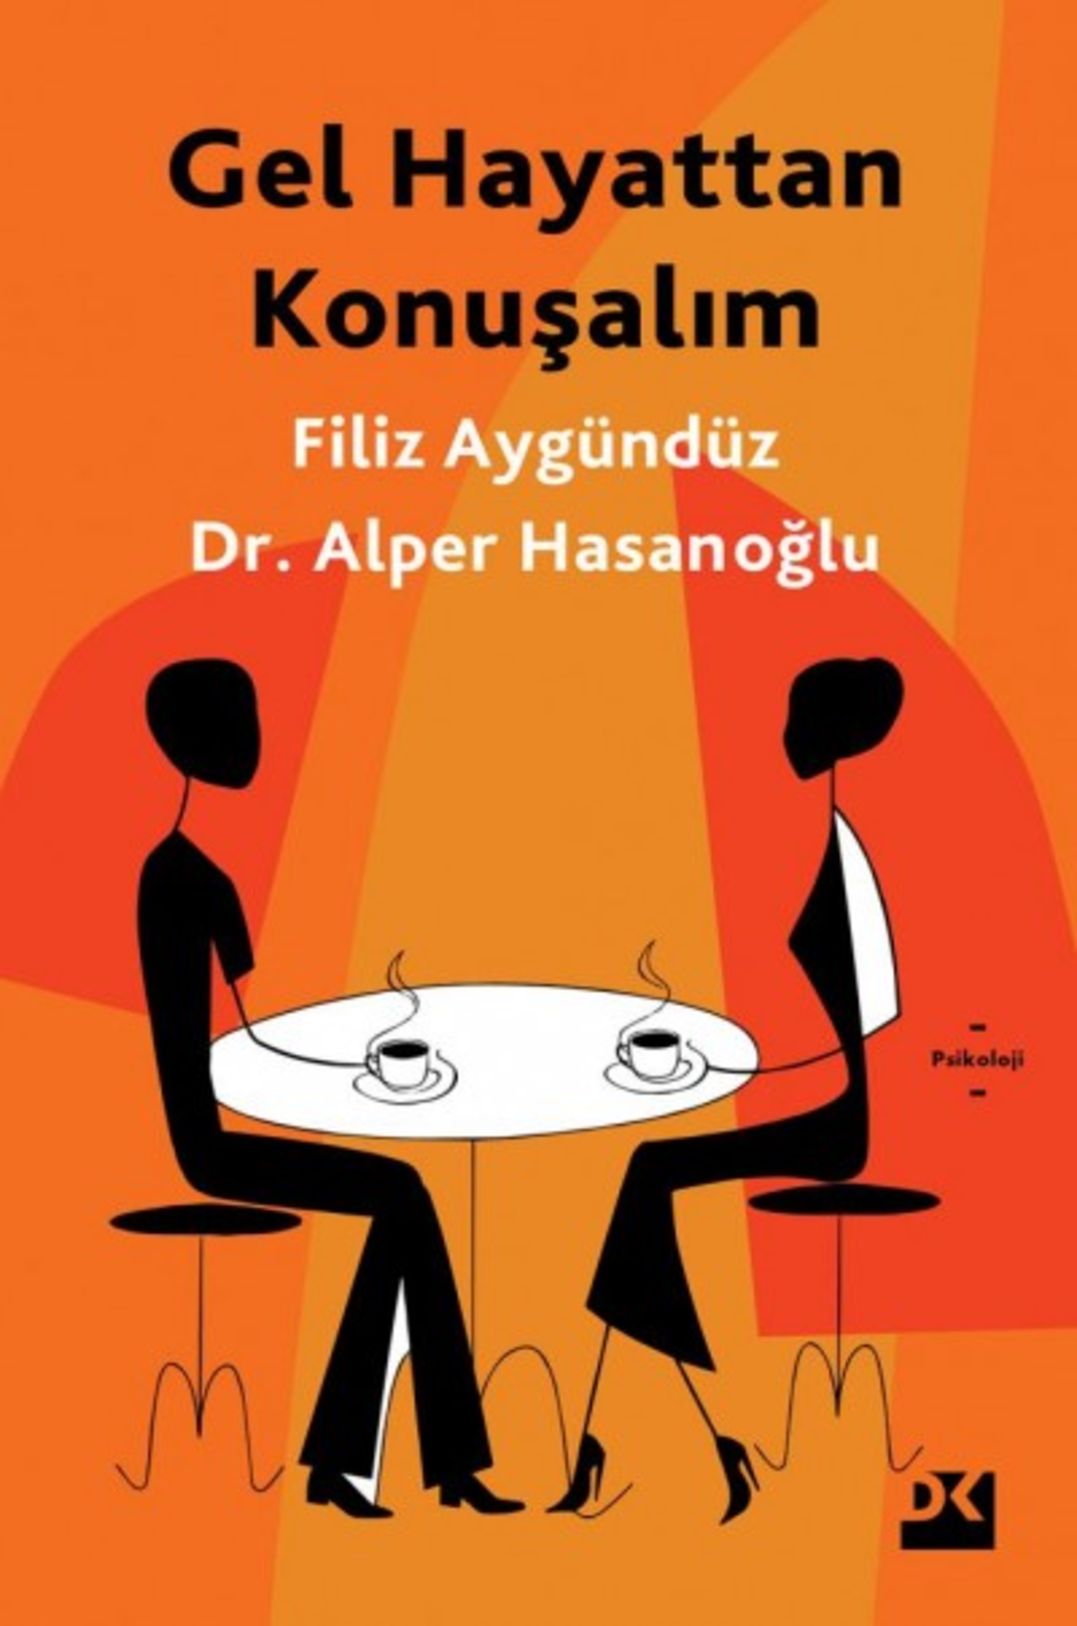  Gel Hayattan Konuşalım (Filiz Aygündüz - Dr. Alper Hasanoğlu / Doğan)